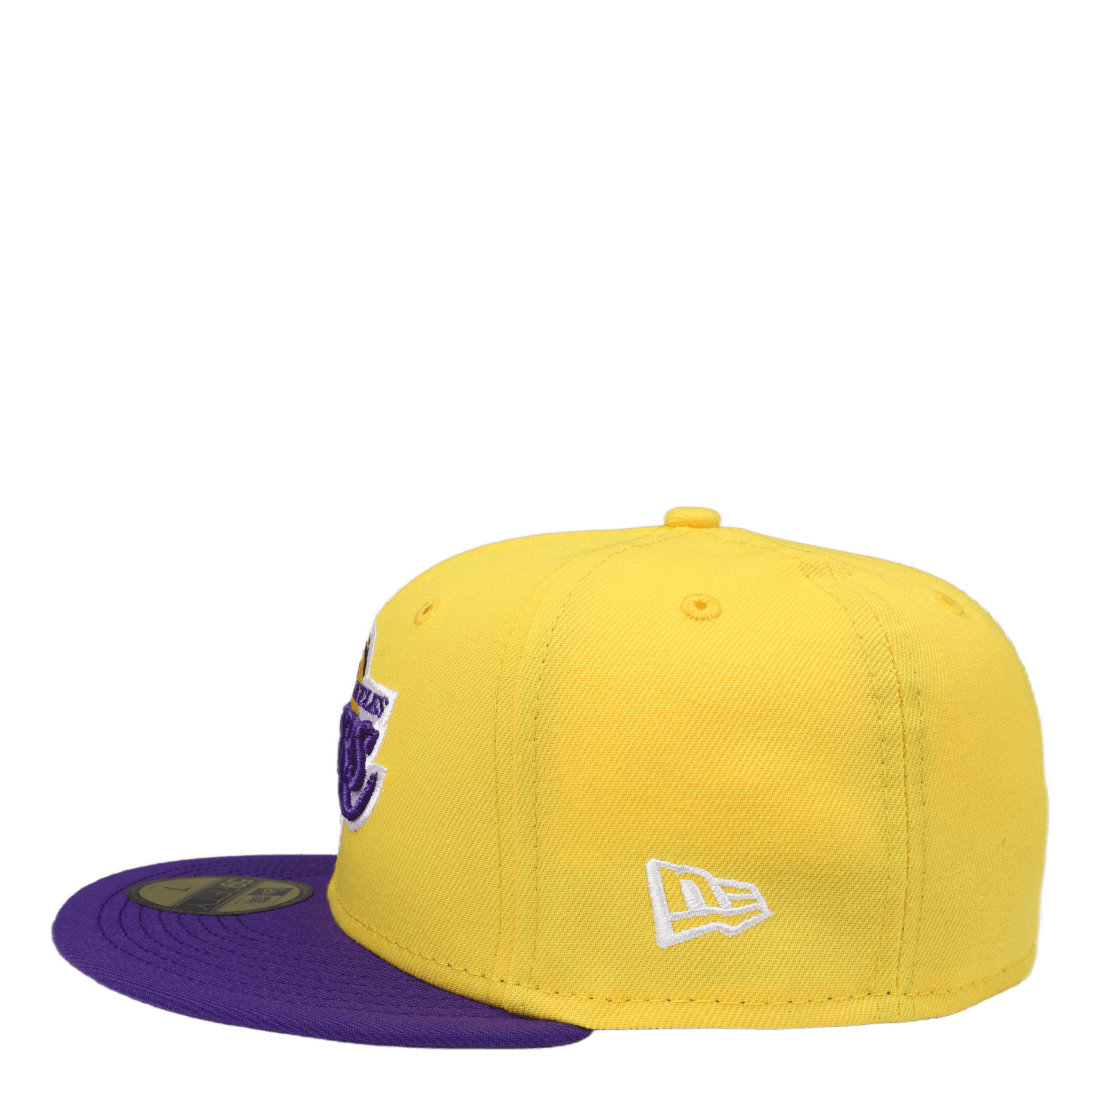 Nba Basic Lakers Yellow/purple Yellow